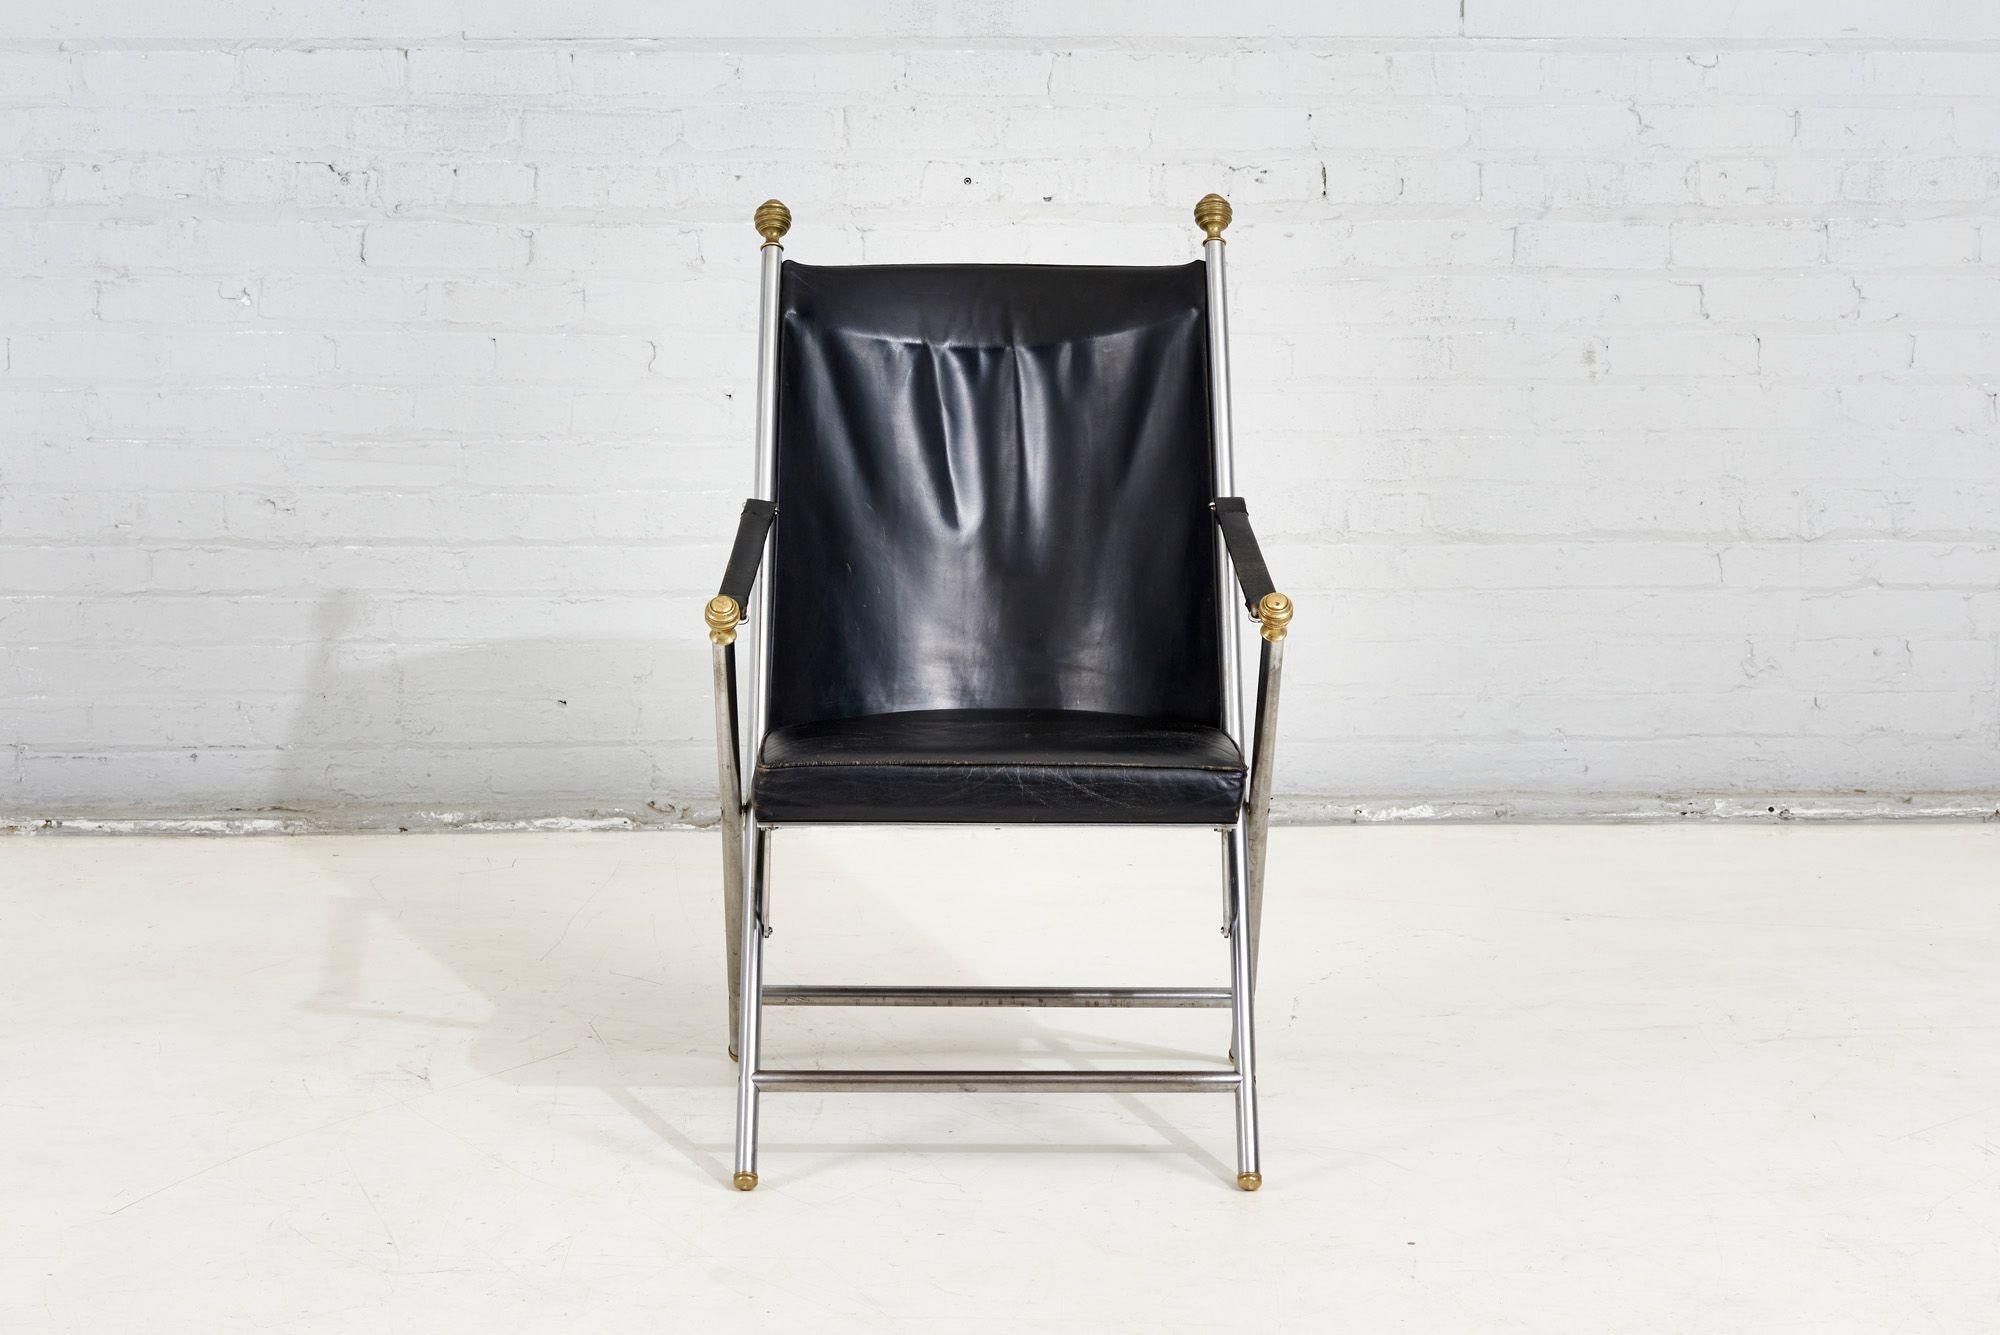 Paar Campaigner-Klappstühle aus Leder von Maison Jansen, 1960.  Original-Leder.  Ein Stuhl hat einen Kratzer auf dem Leder der Rückenlehne.

